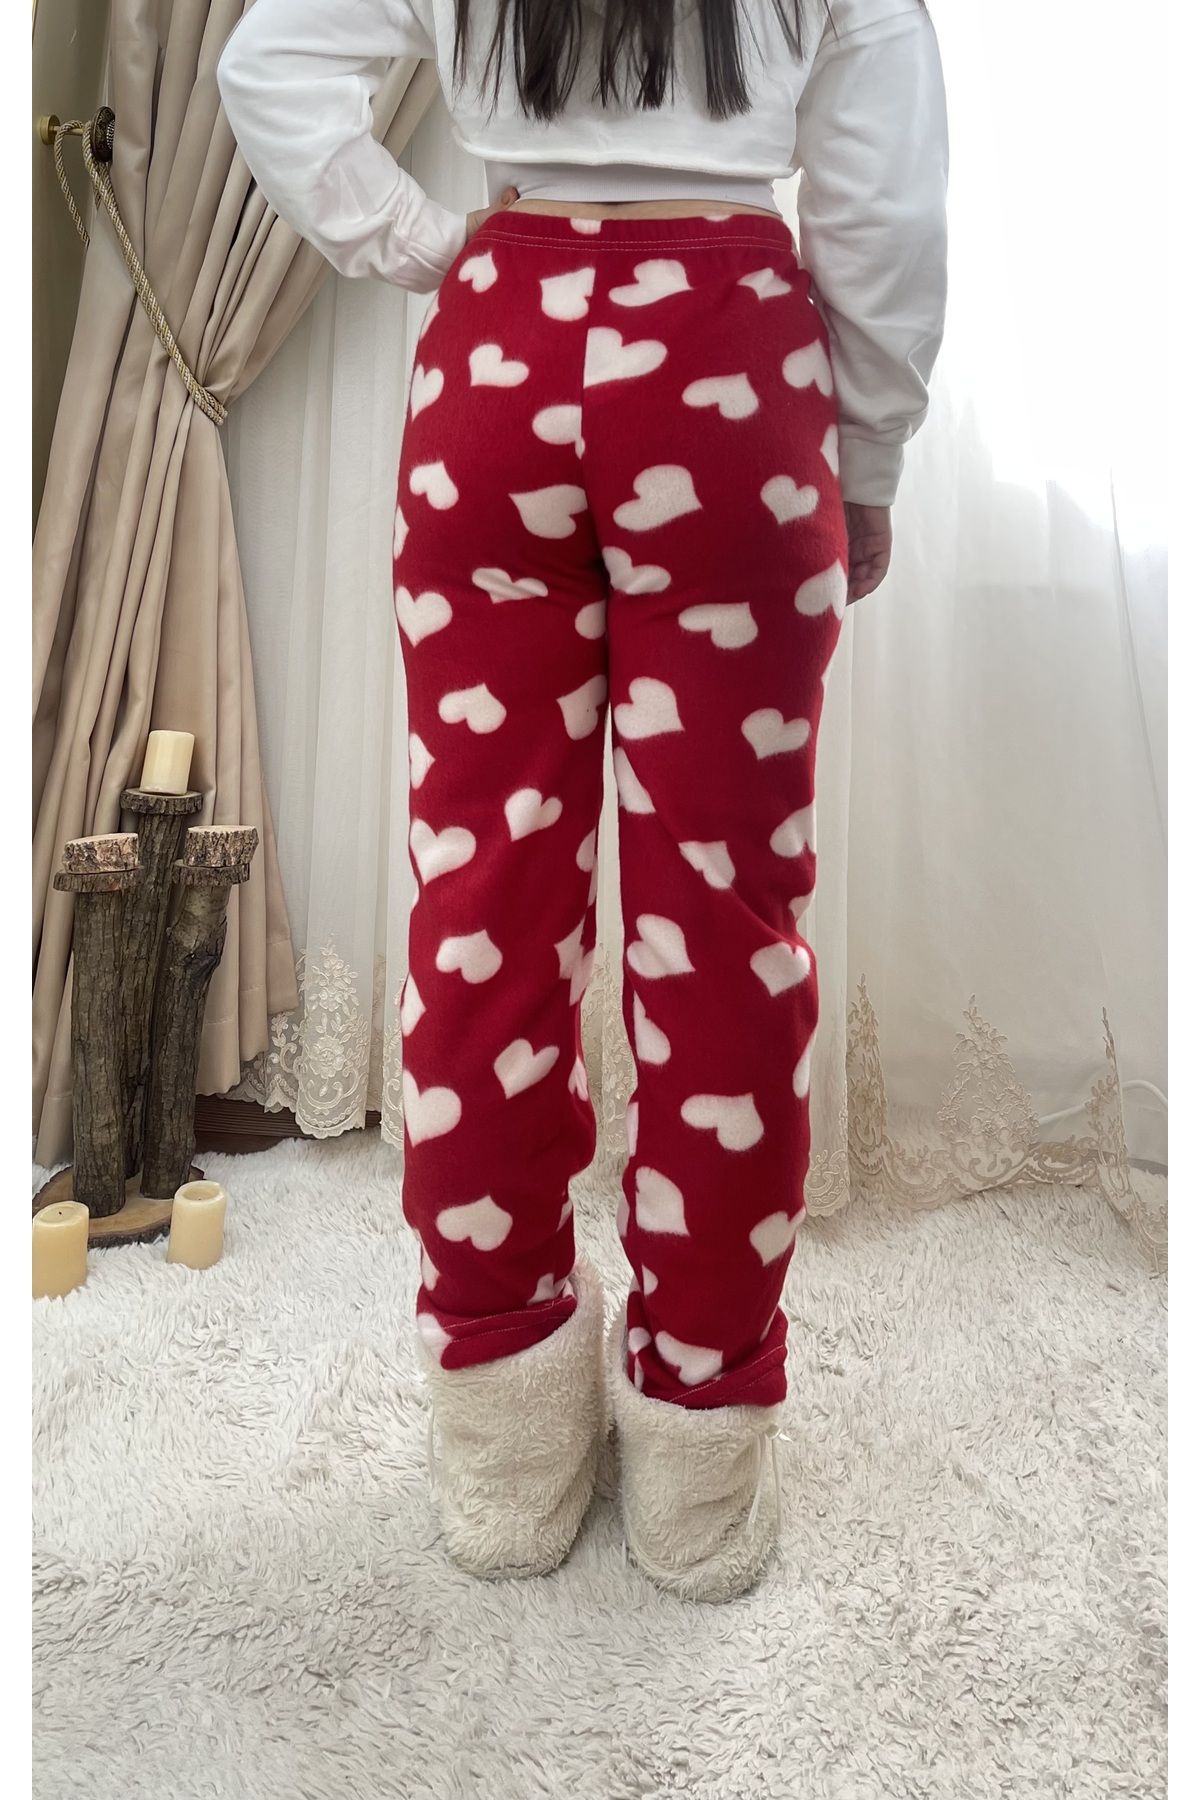 Betimoda Red Heart Women's Fleece Pajama Bottoms Winter Elastic